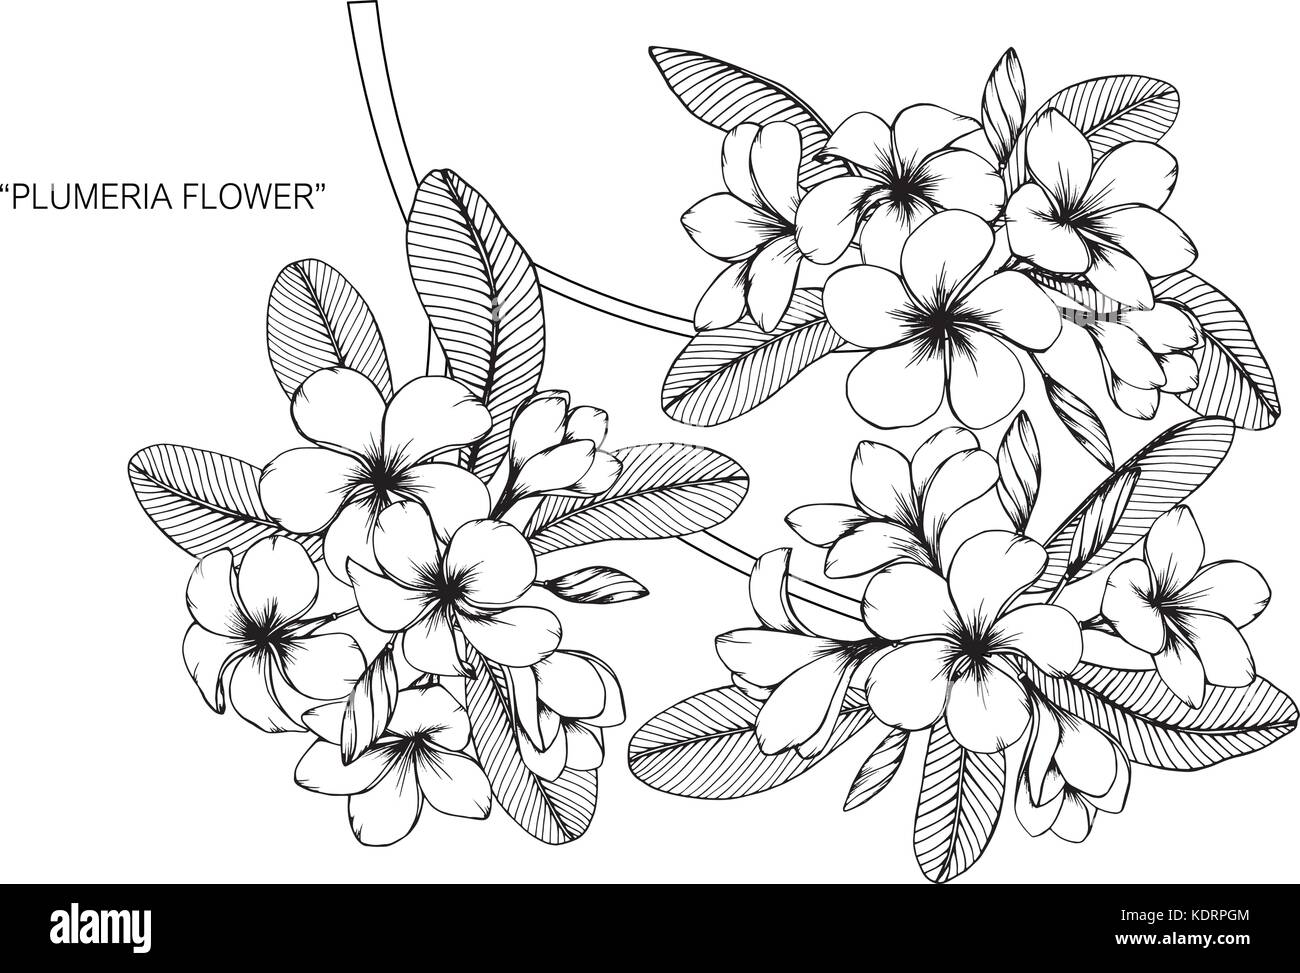 Fiore di Plumeria disegno illustrativo. In bianco e nero con la linea tecnica. Illustrazione Vettoriale